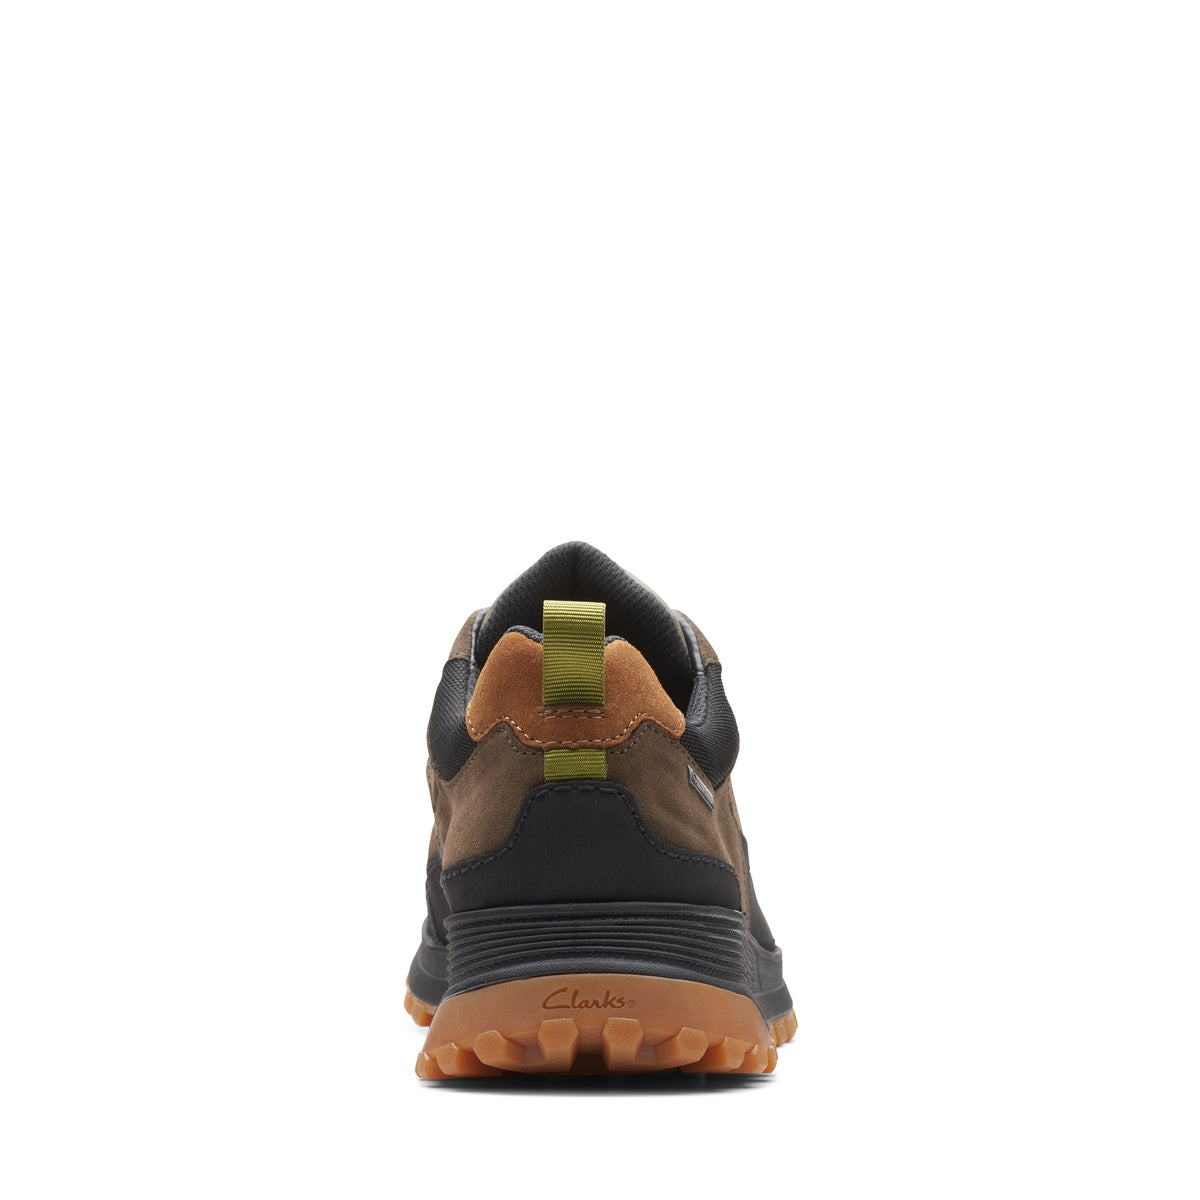 Zapatos Derby De La Marca Clarks Para Hombre Modelo Atl Treklogtx Dark Olive CombiEn Color Verde